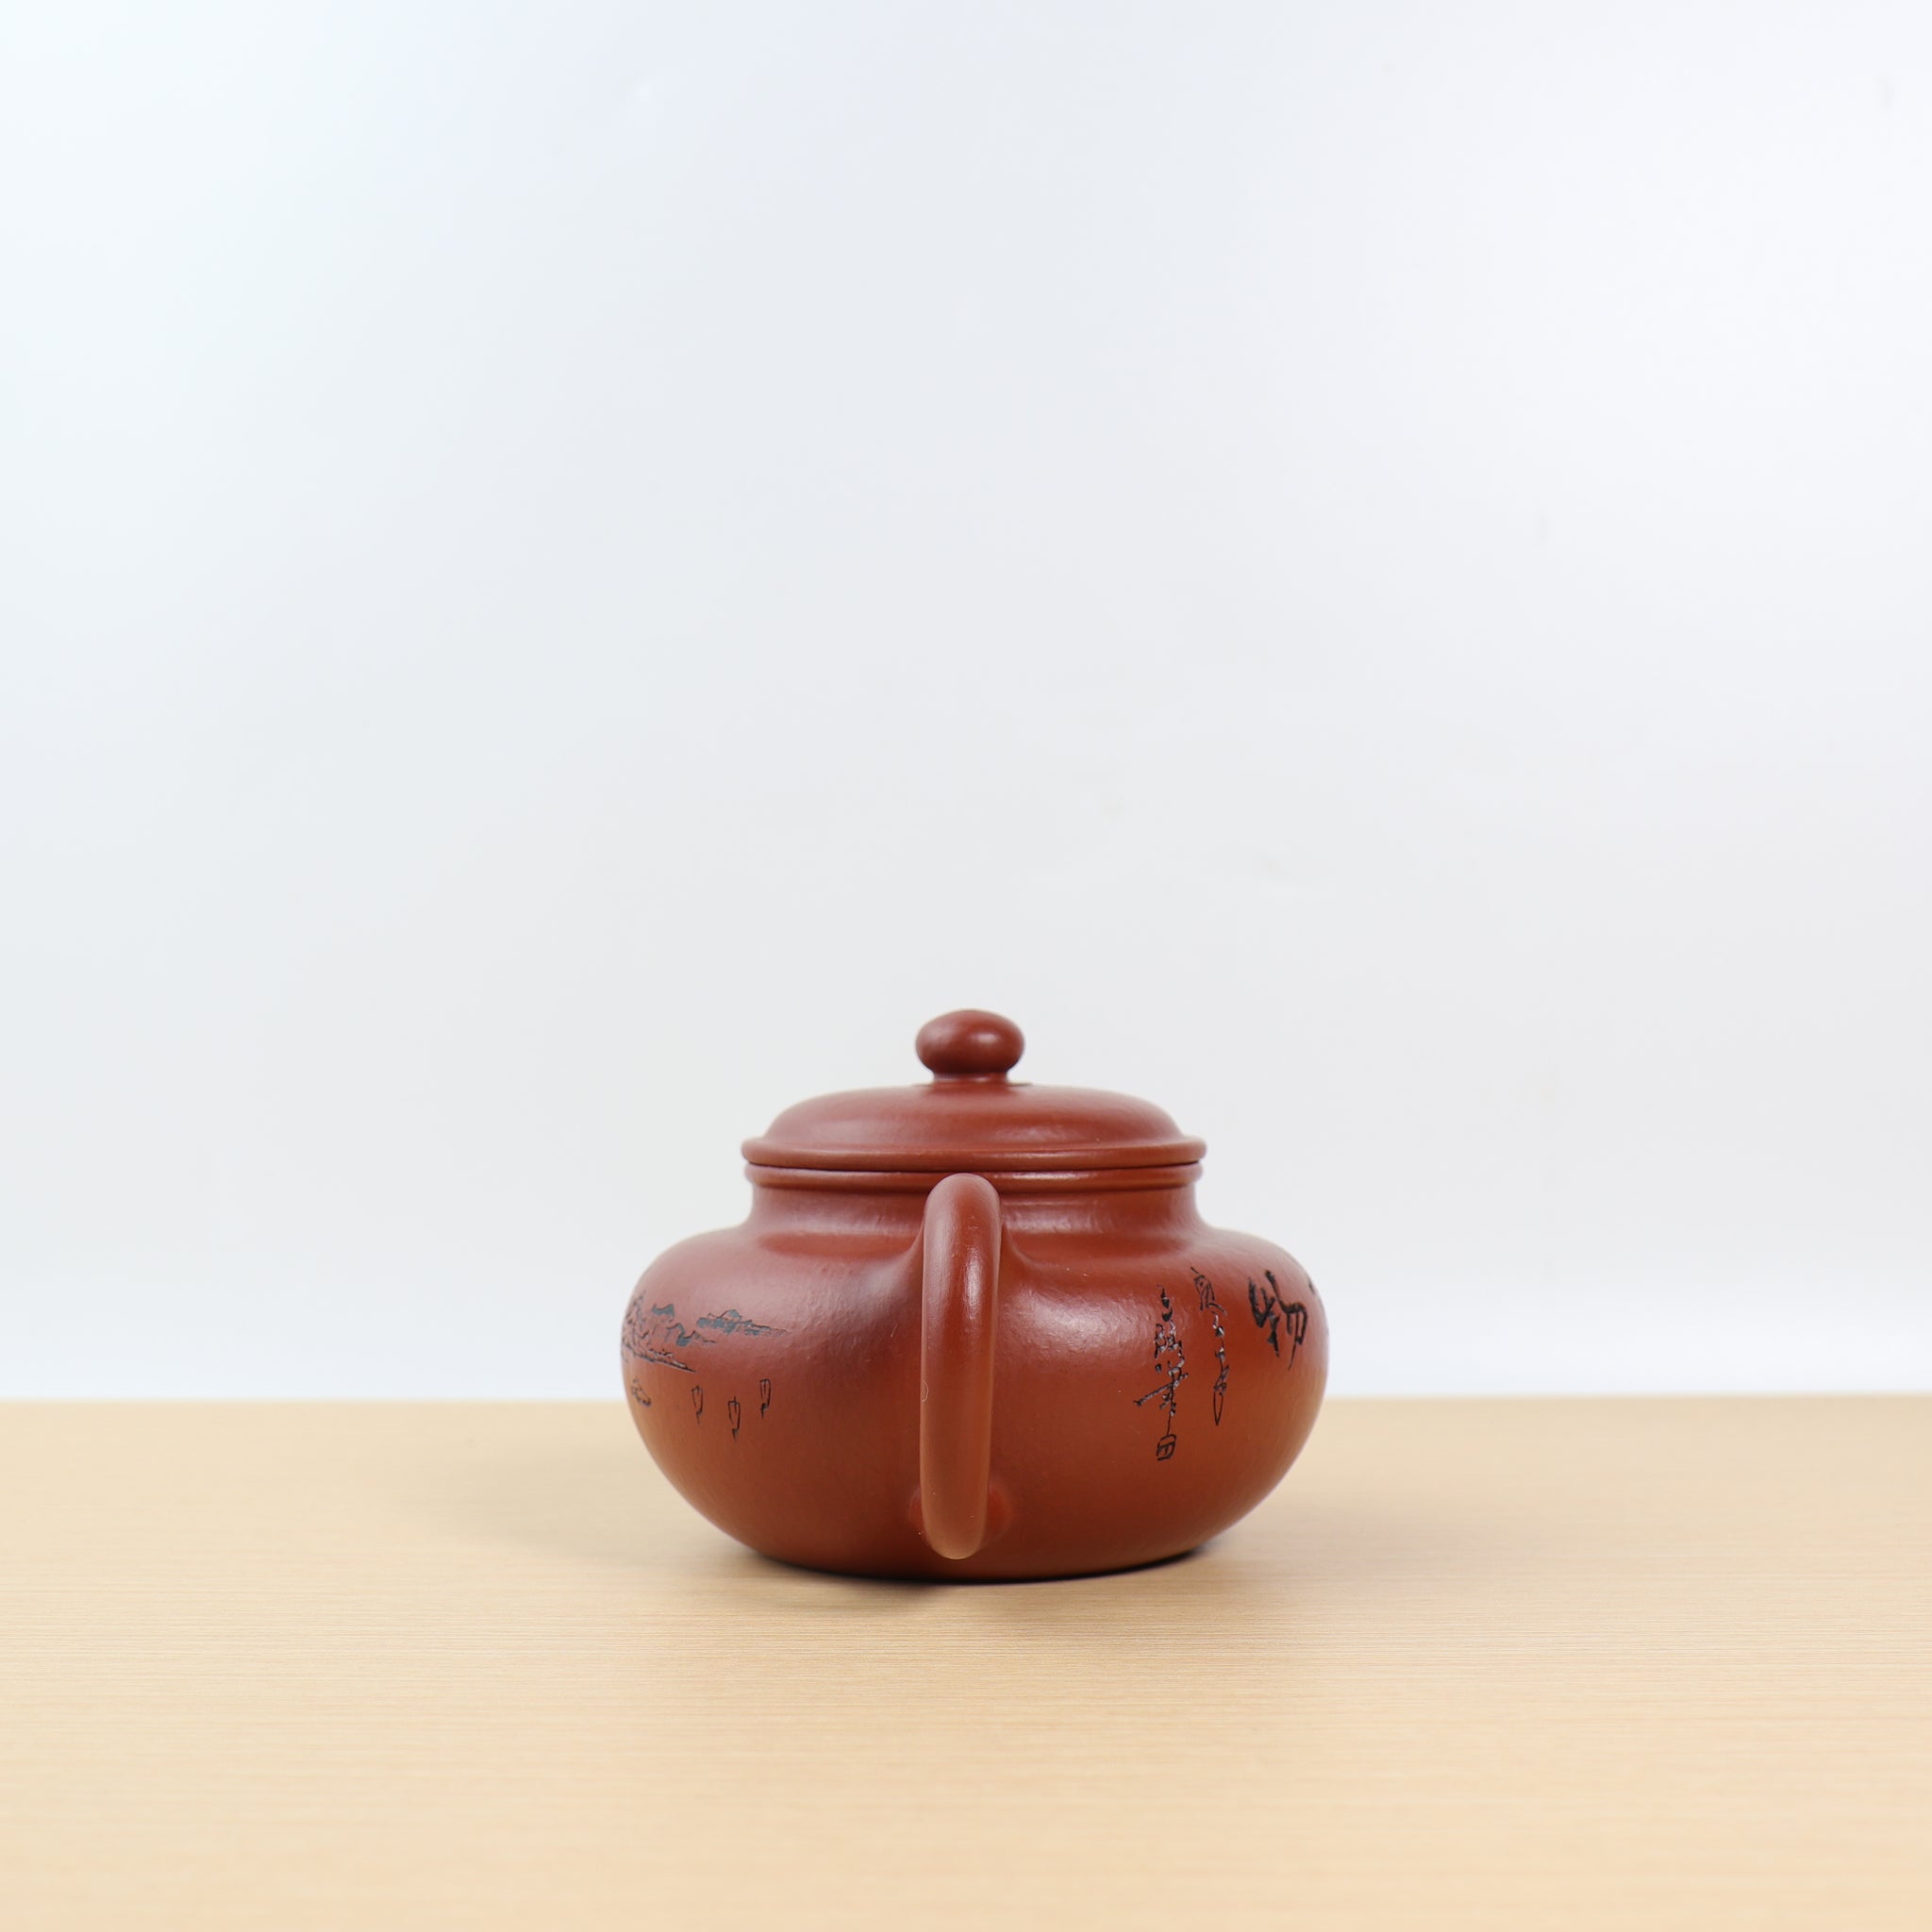 【仿古】大紅袍雕刻紫砂茶壺